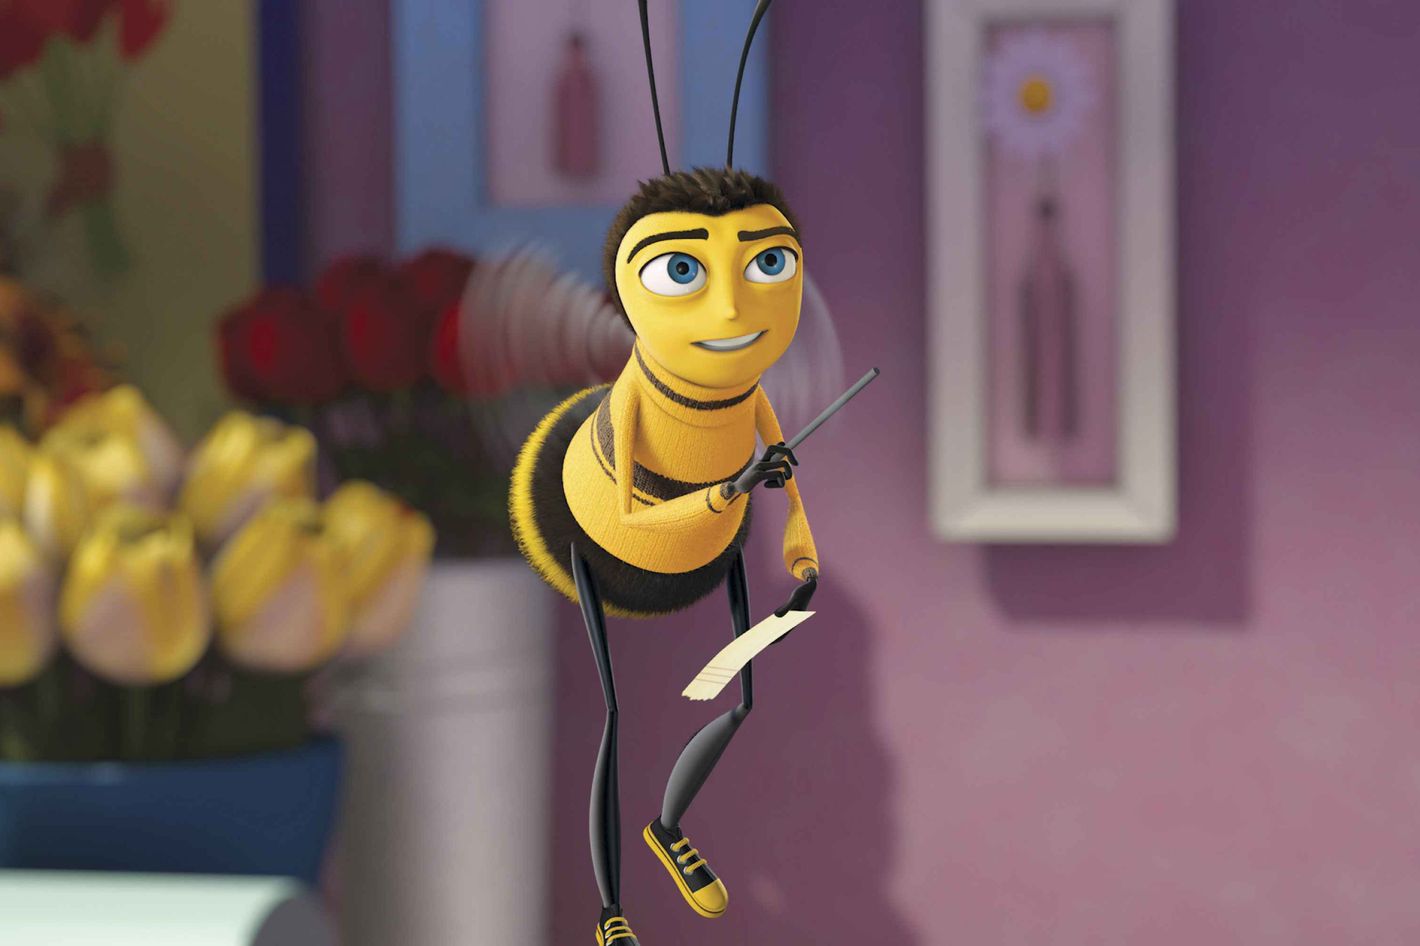 Bee Movie Memes